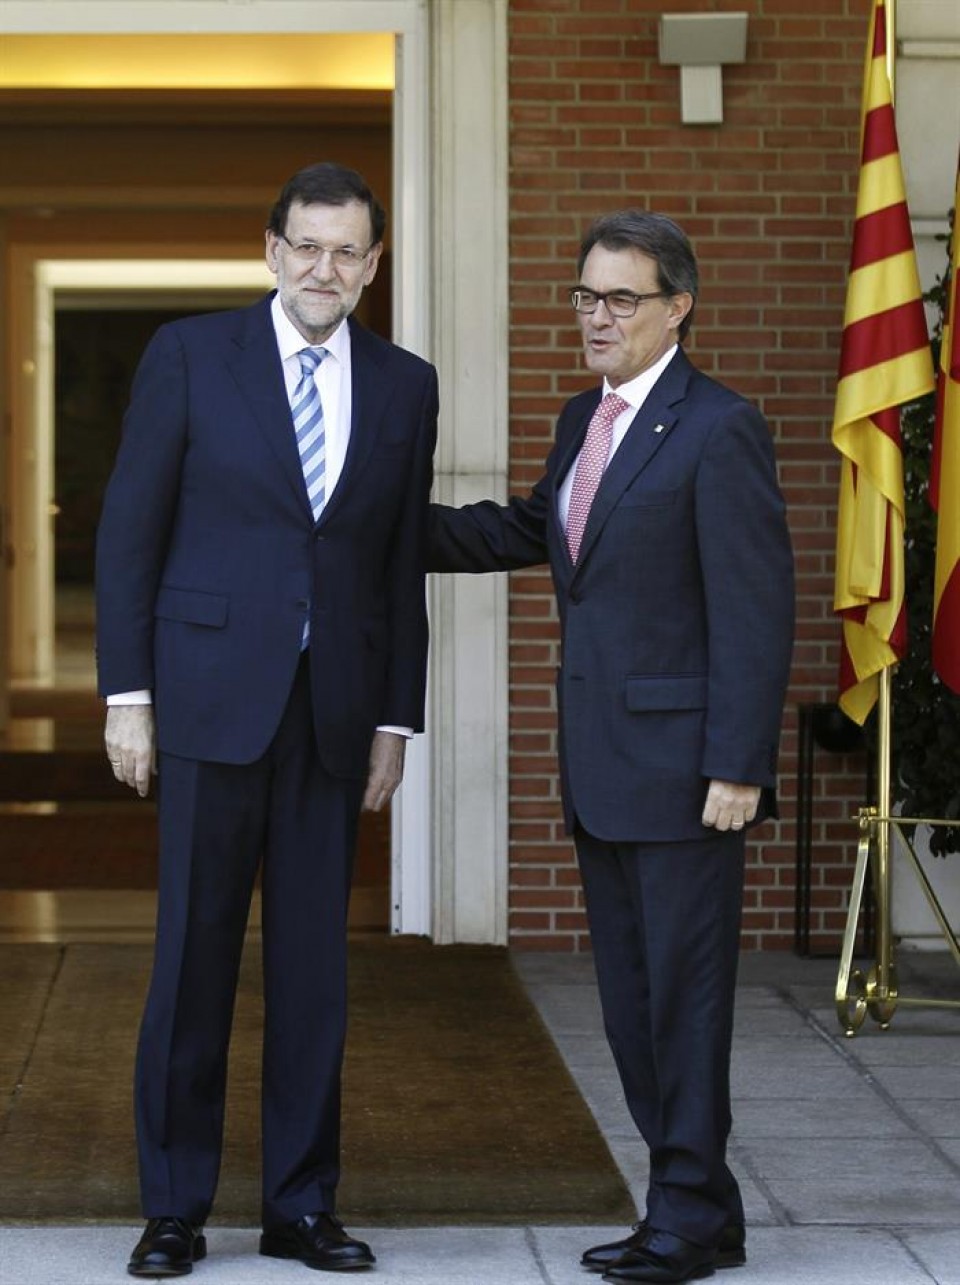 Mariano Rajoy eta Artur Mas uztailaren 30ean Moncloan egin zuten bileran. Artxiboko irudia: EFE